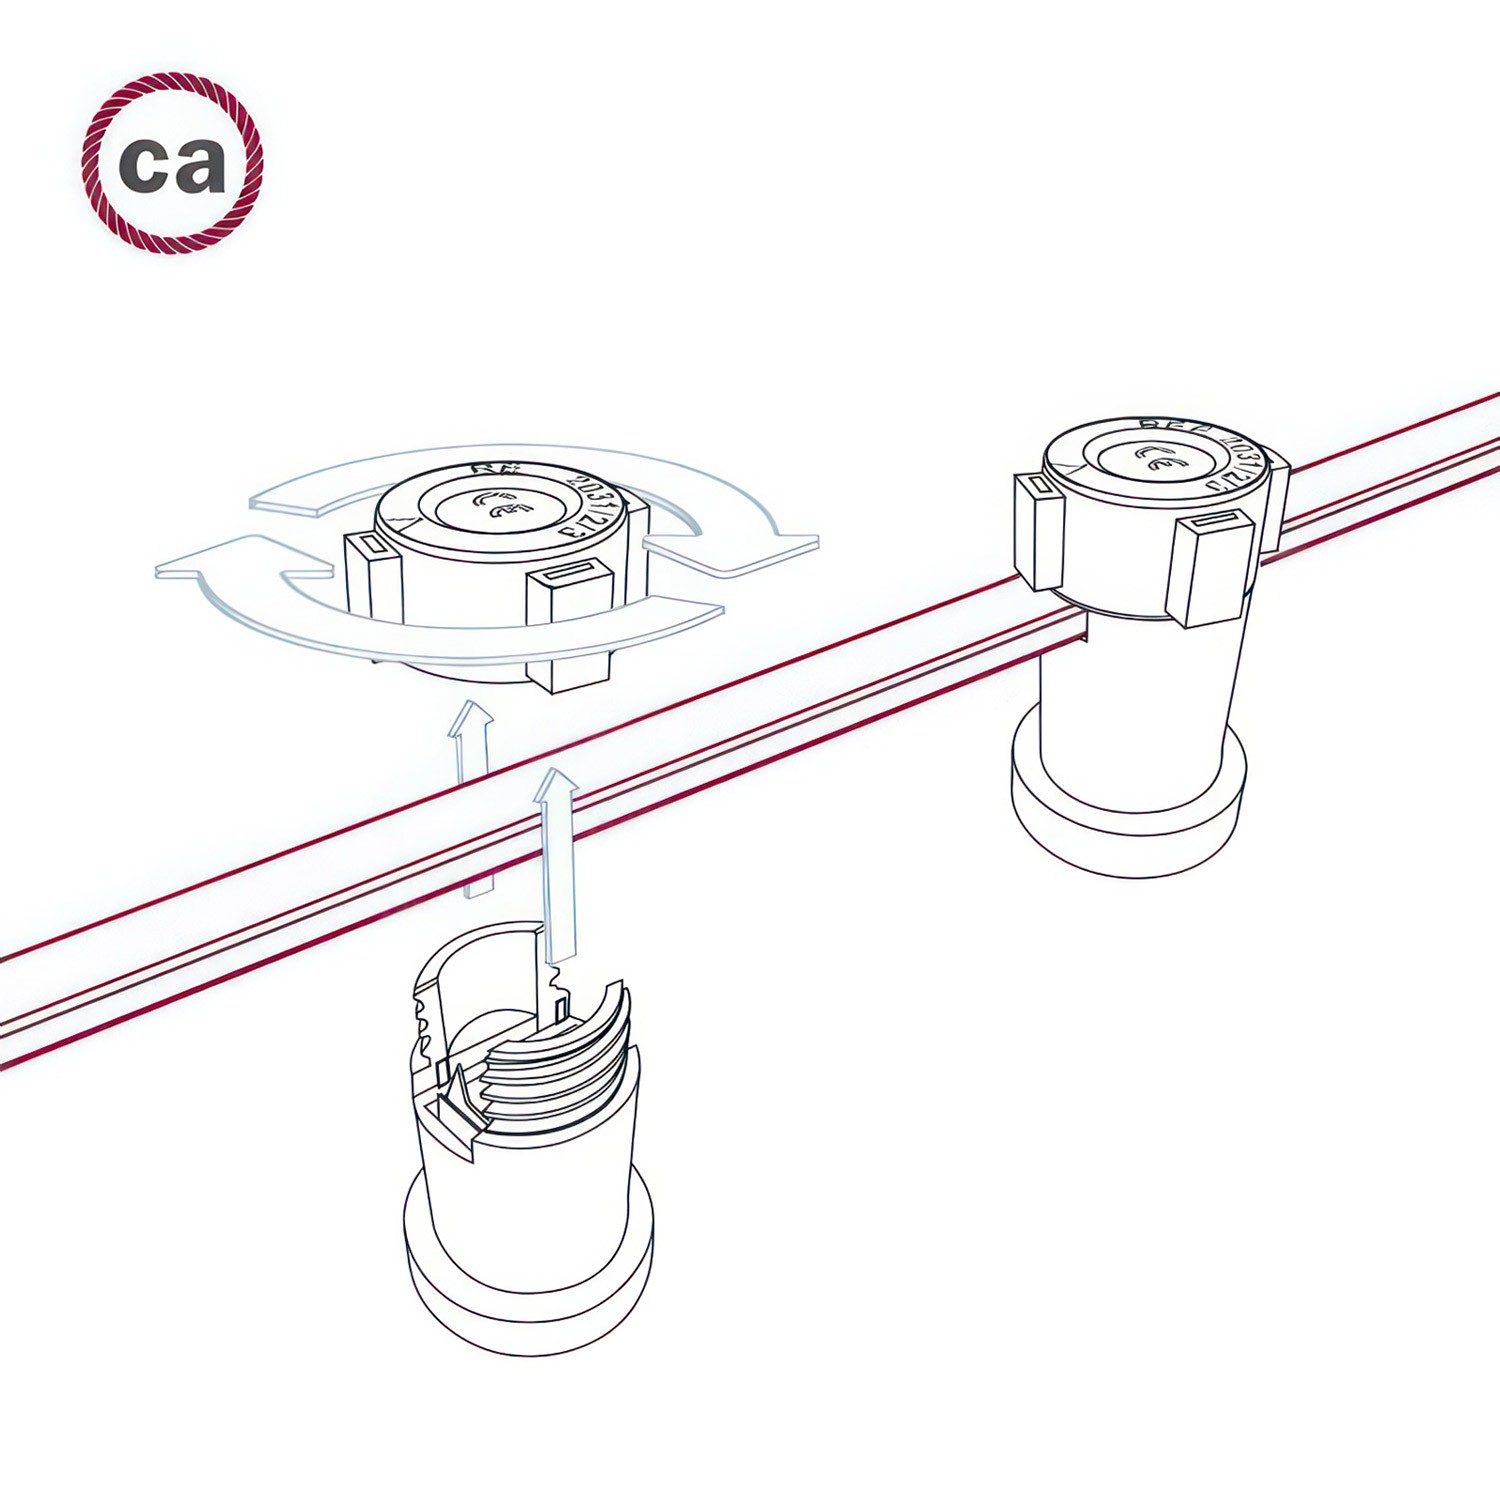 Câble électrique pour guirlande lumineuse Vertigo de Coton Gris et Blanc ECC37